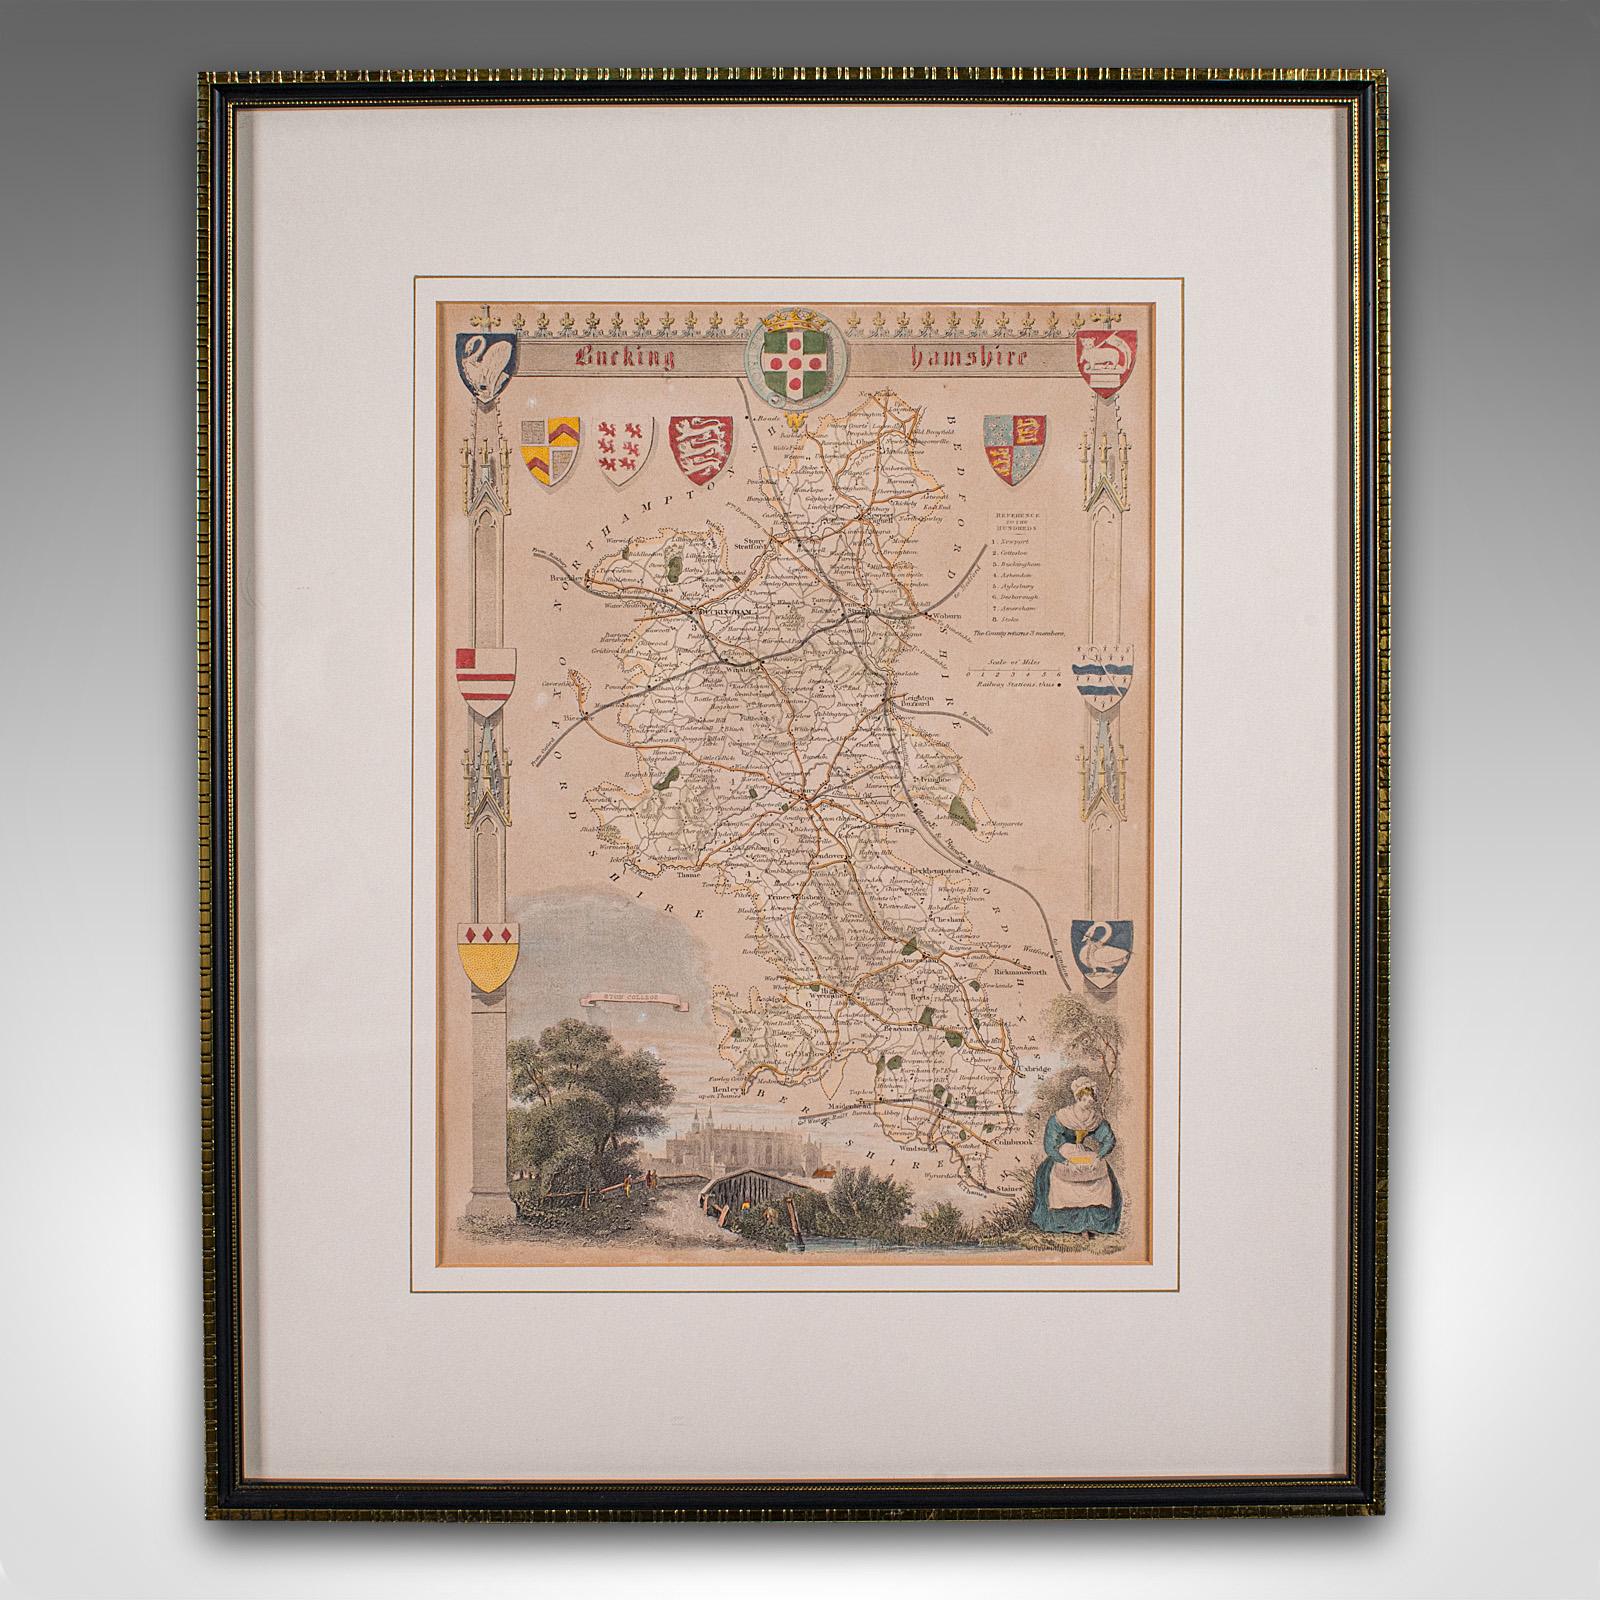 Dies ist eine antike lithografische Karte von Buckinghamshire. Ein englischer, gerahmter Atlasstich von kartografischem Interesse aus der Mitte des 19. Jahrhunderts und später.

Hervorragende Lithografie von Buckinghamshire und seiner Grafschaft,